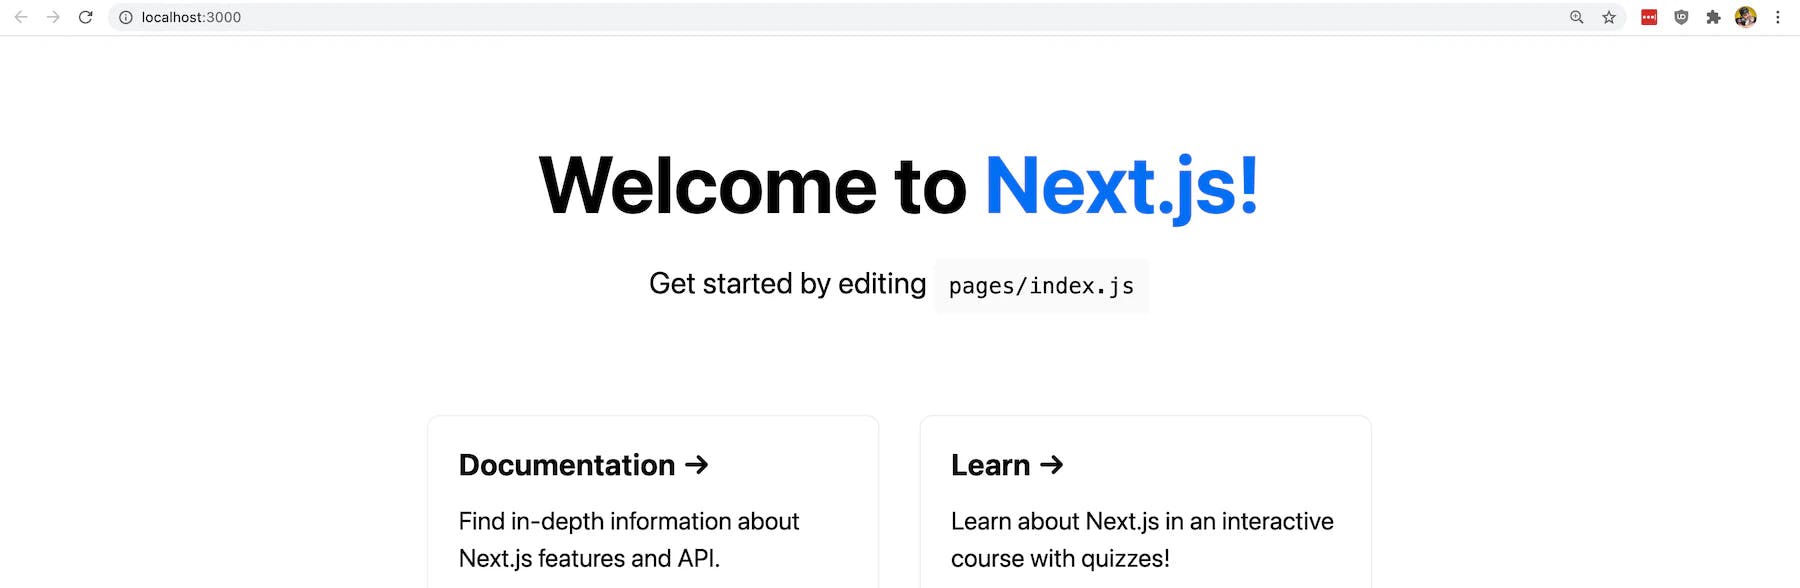 New Next.js app